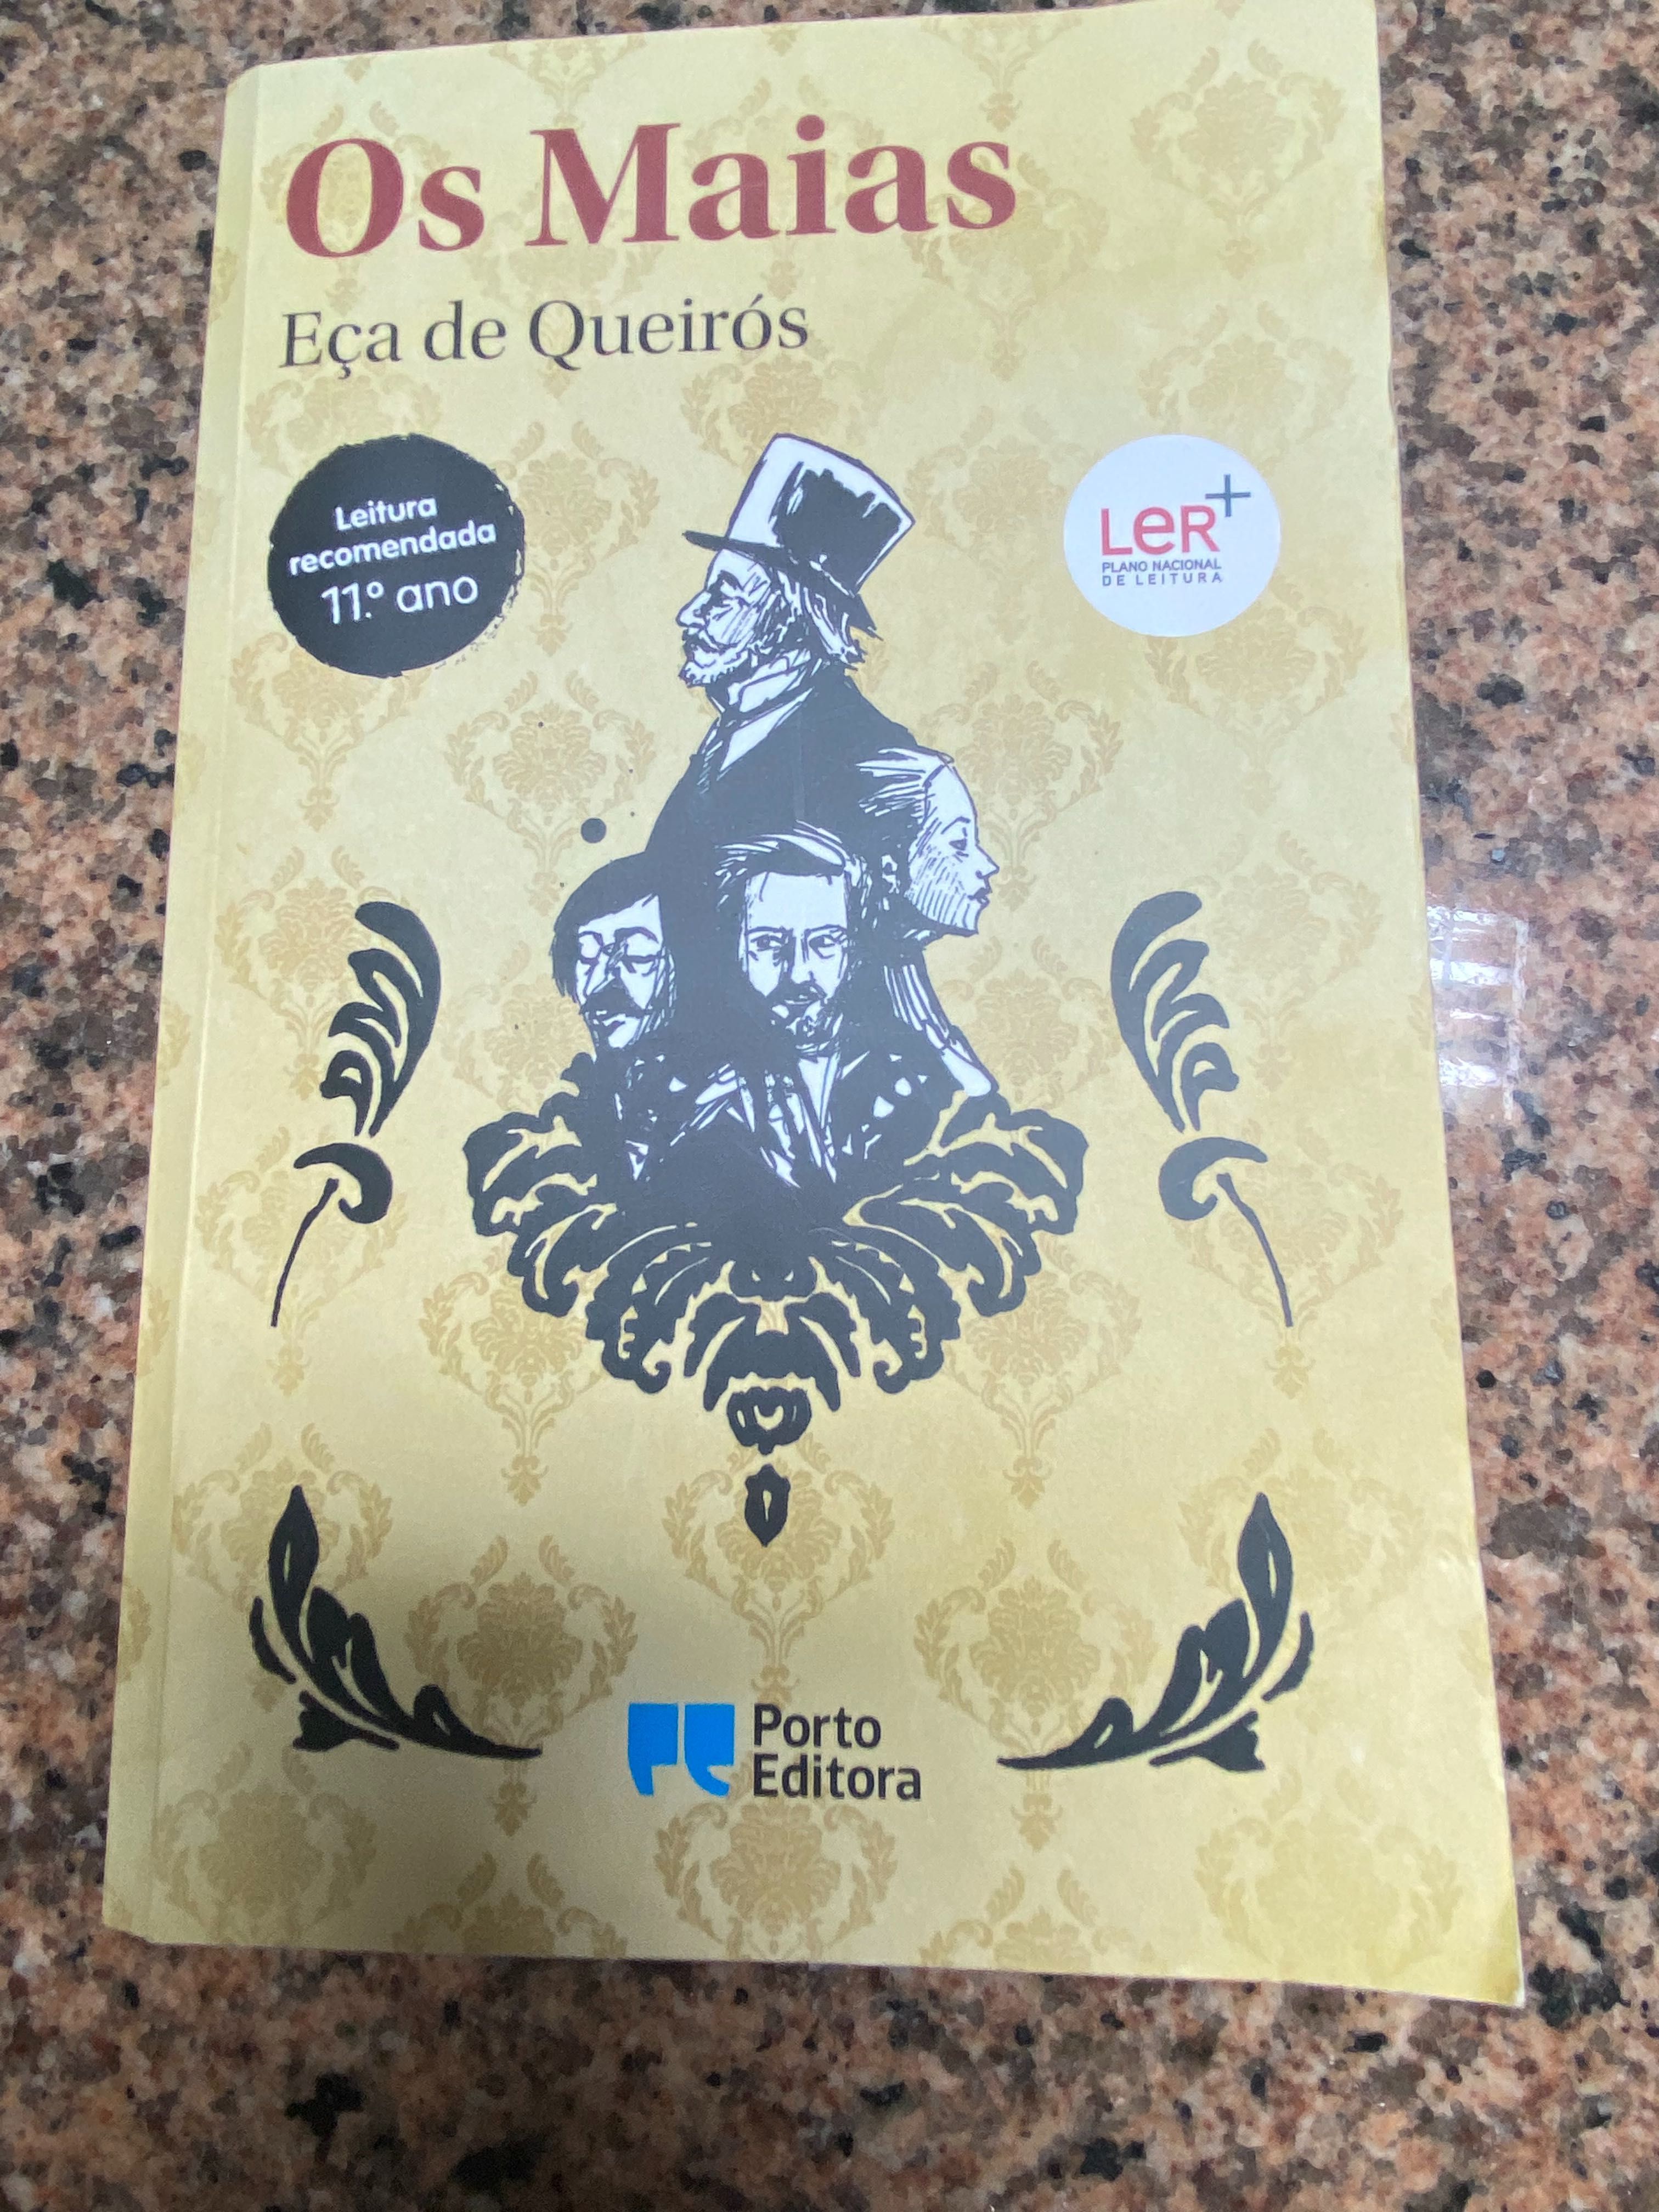 Livro “Os Maias” de Eça de Queirós, Porto Editora